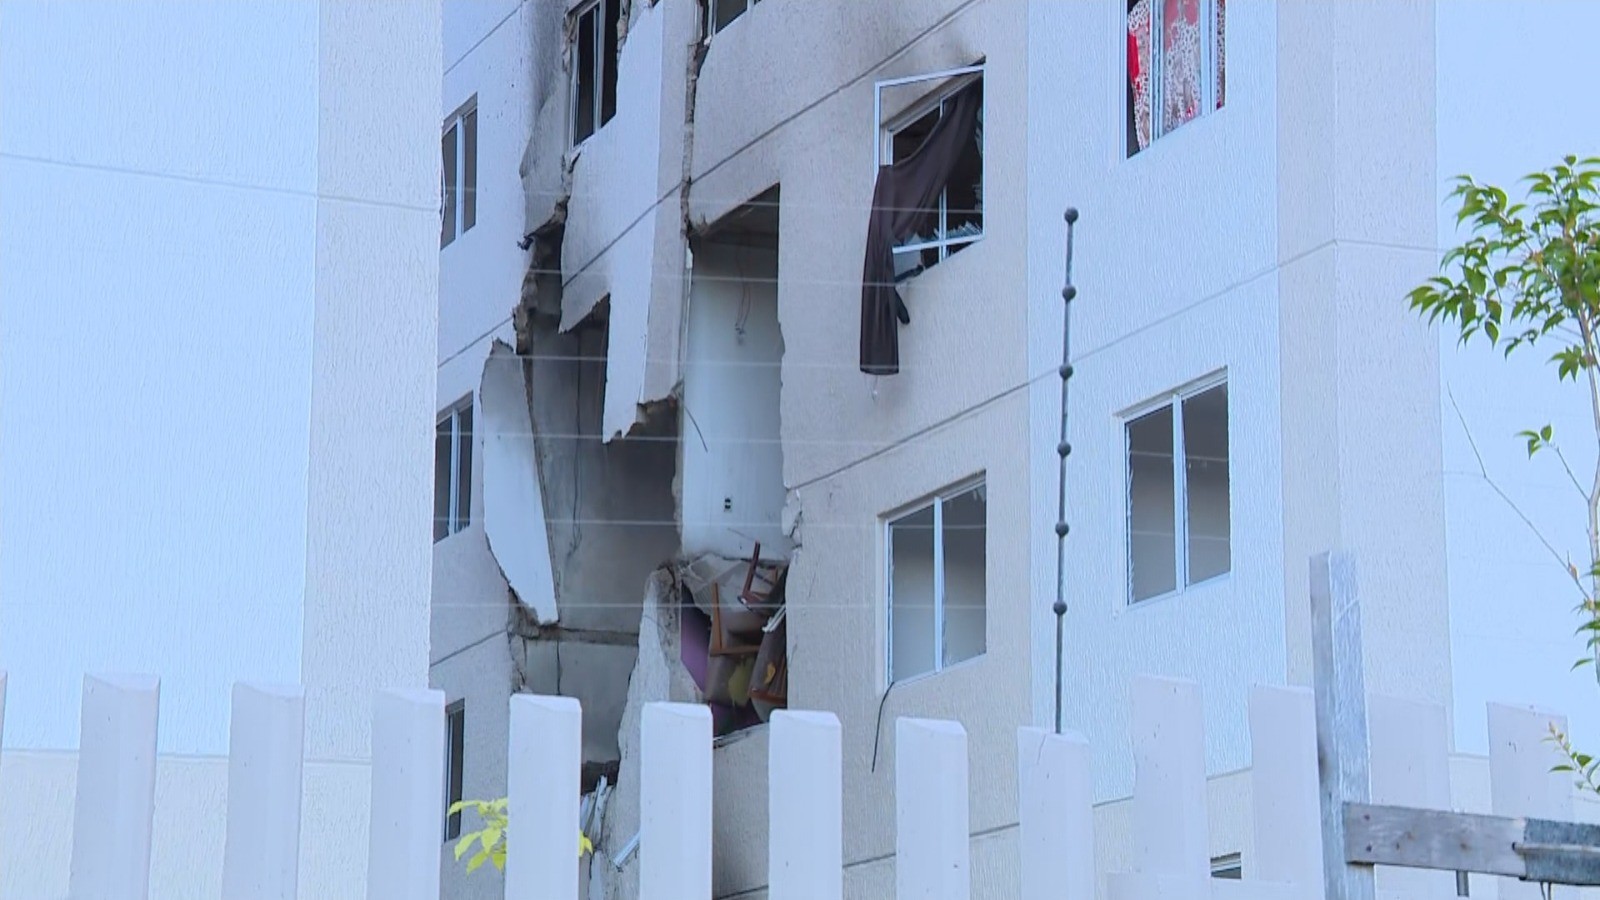 Moradores de condomínio atingido por explosão voltam a ser retirados após cheiro de gás, diz Defesa Civil